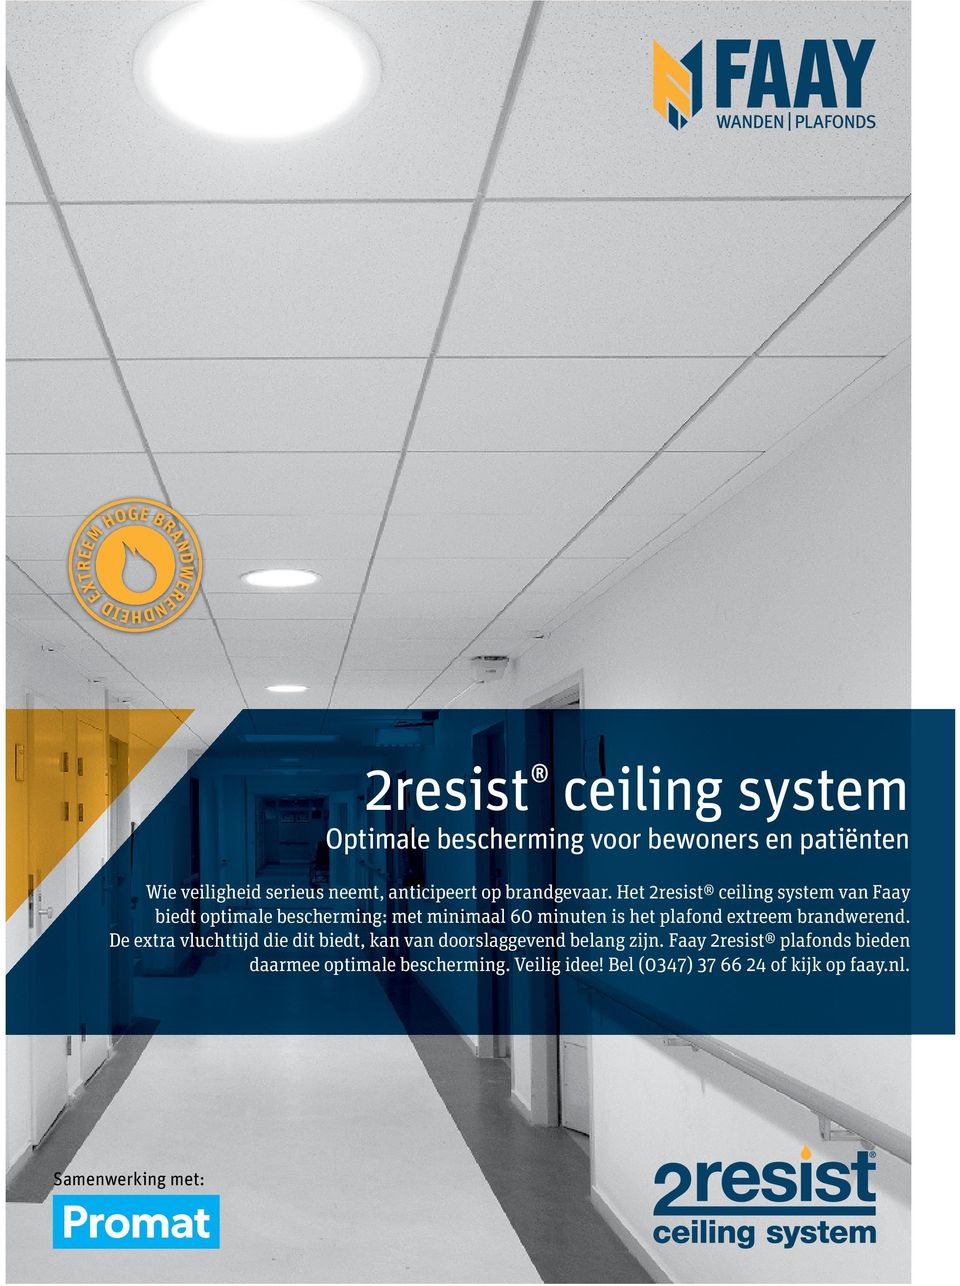 Het 2resist ceiling system van Faay biedt optimale bescherming: met minimaal 60 minuten is het plafond extreem brandwerend.